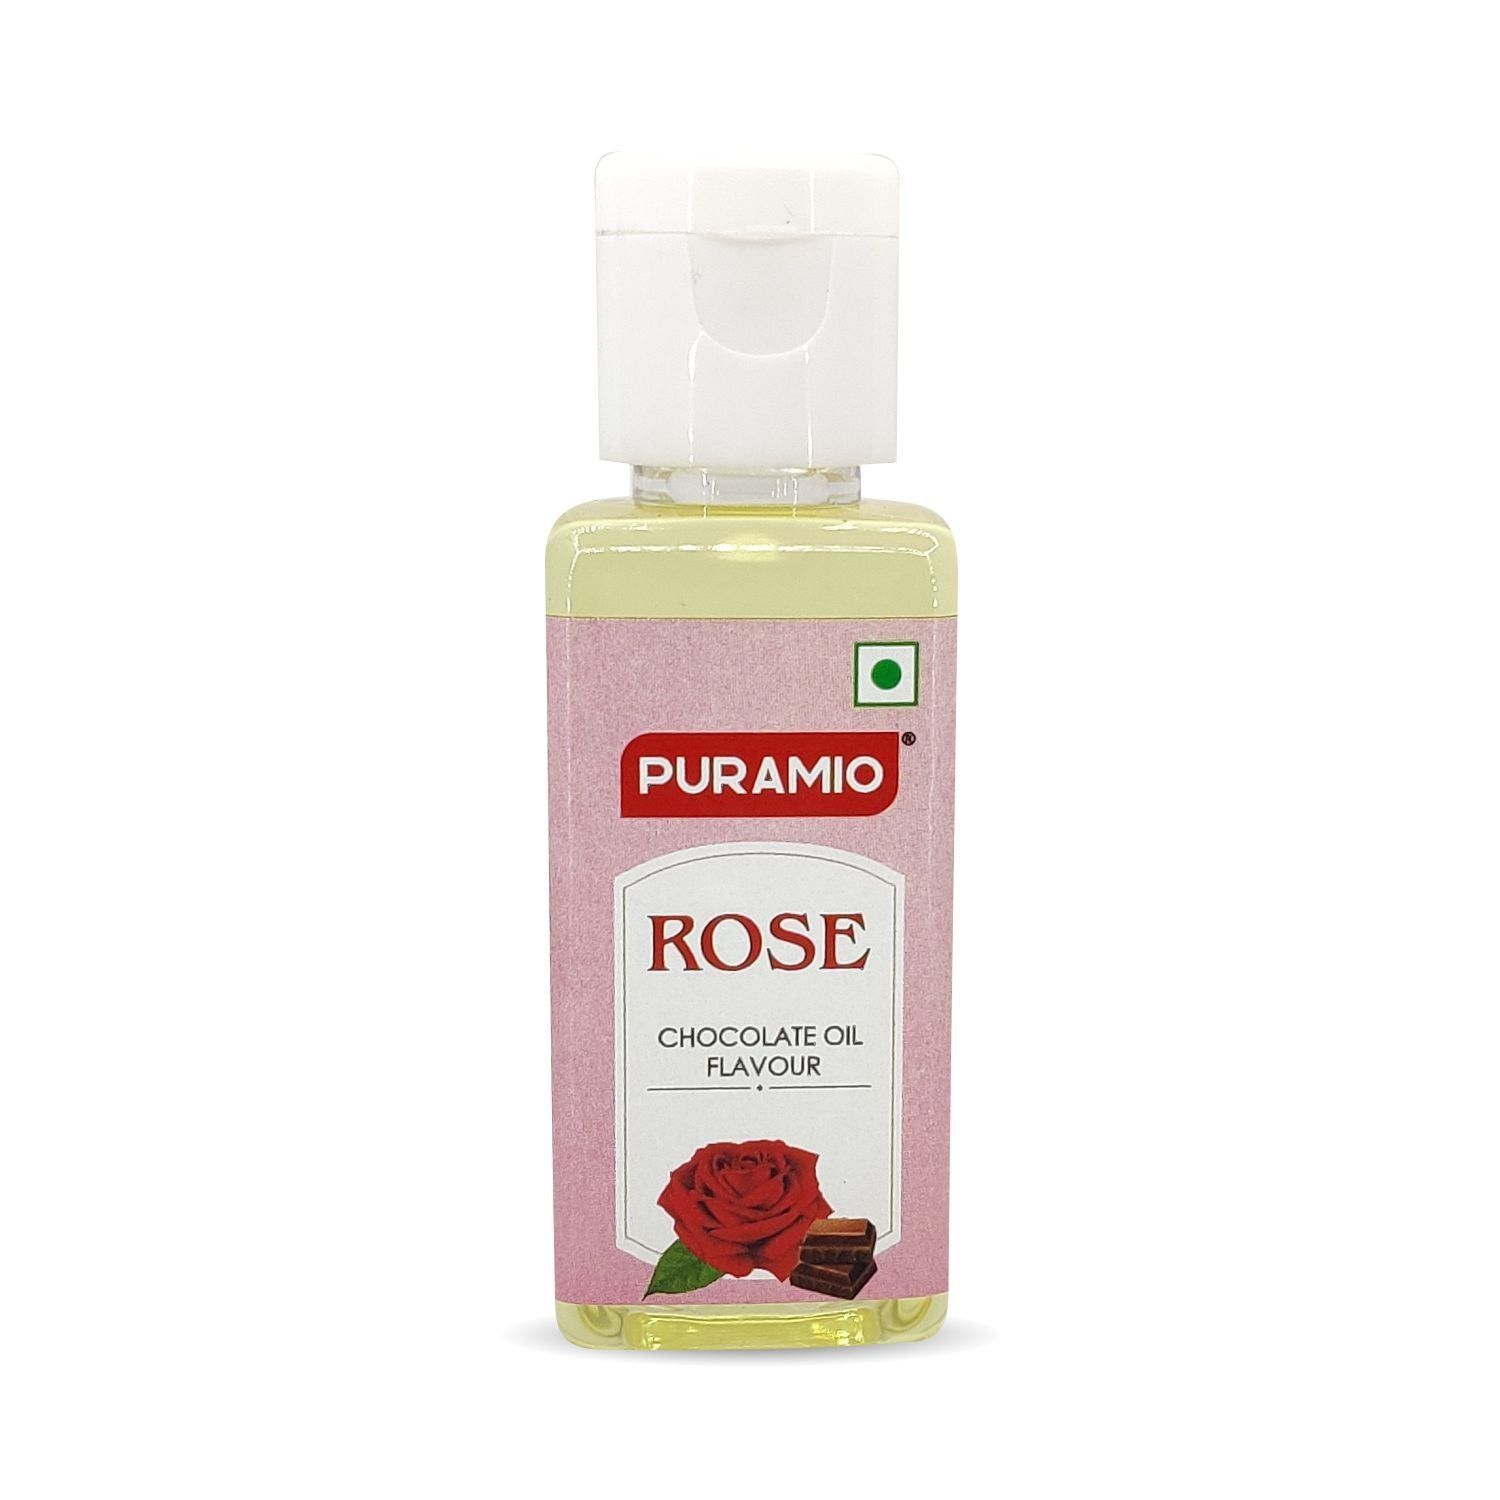 Puramio Chocolate Oil Flavour - Rose, 30 ml